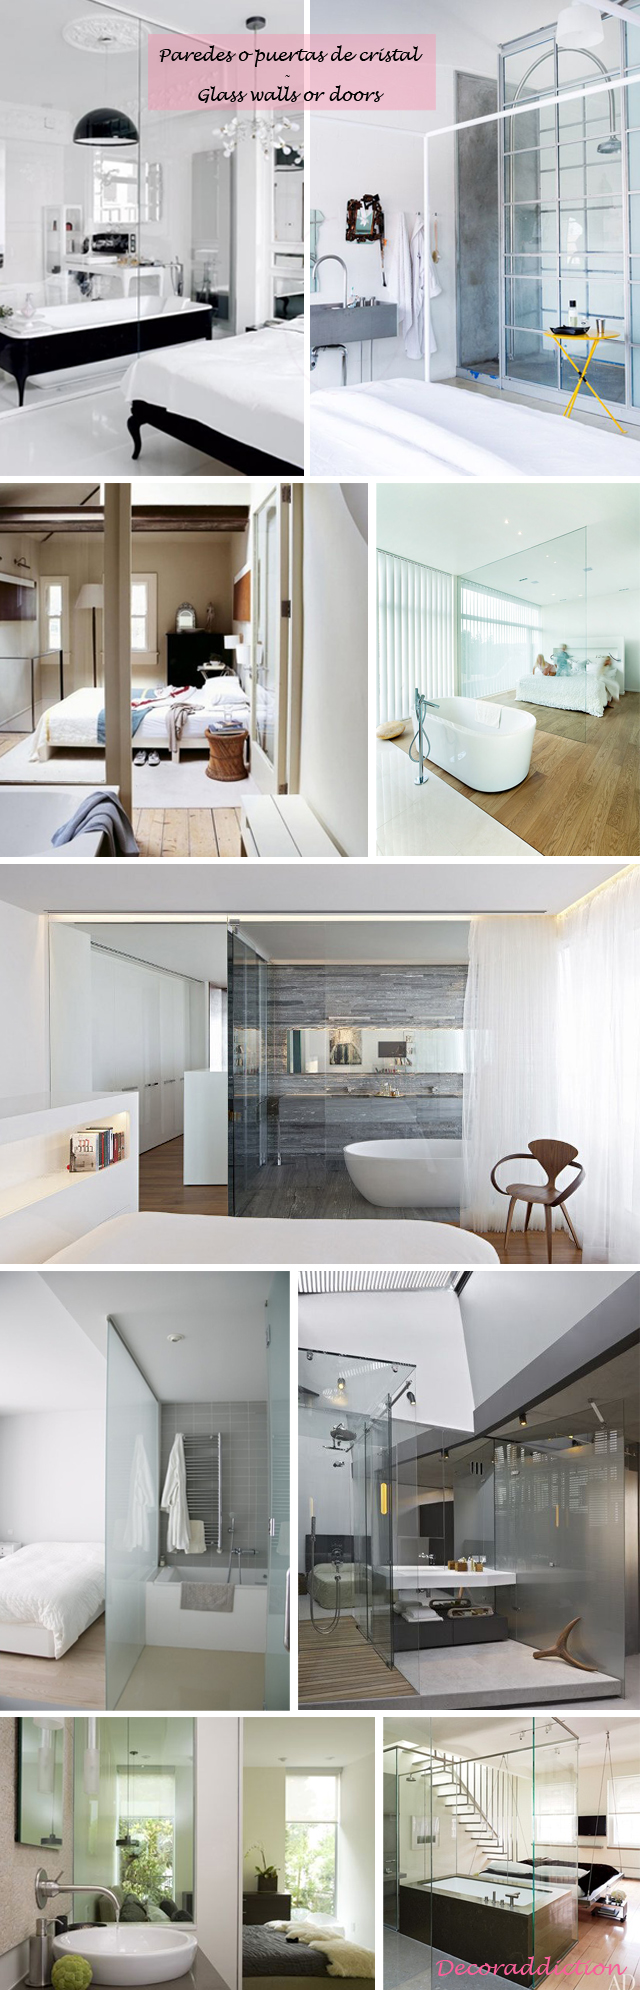 Baños integrados en el dormitorio - Bathrooms integrated in the bedroom_paredes de cristal